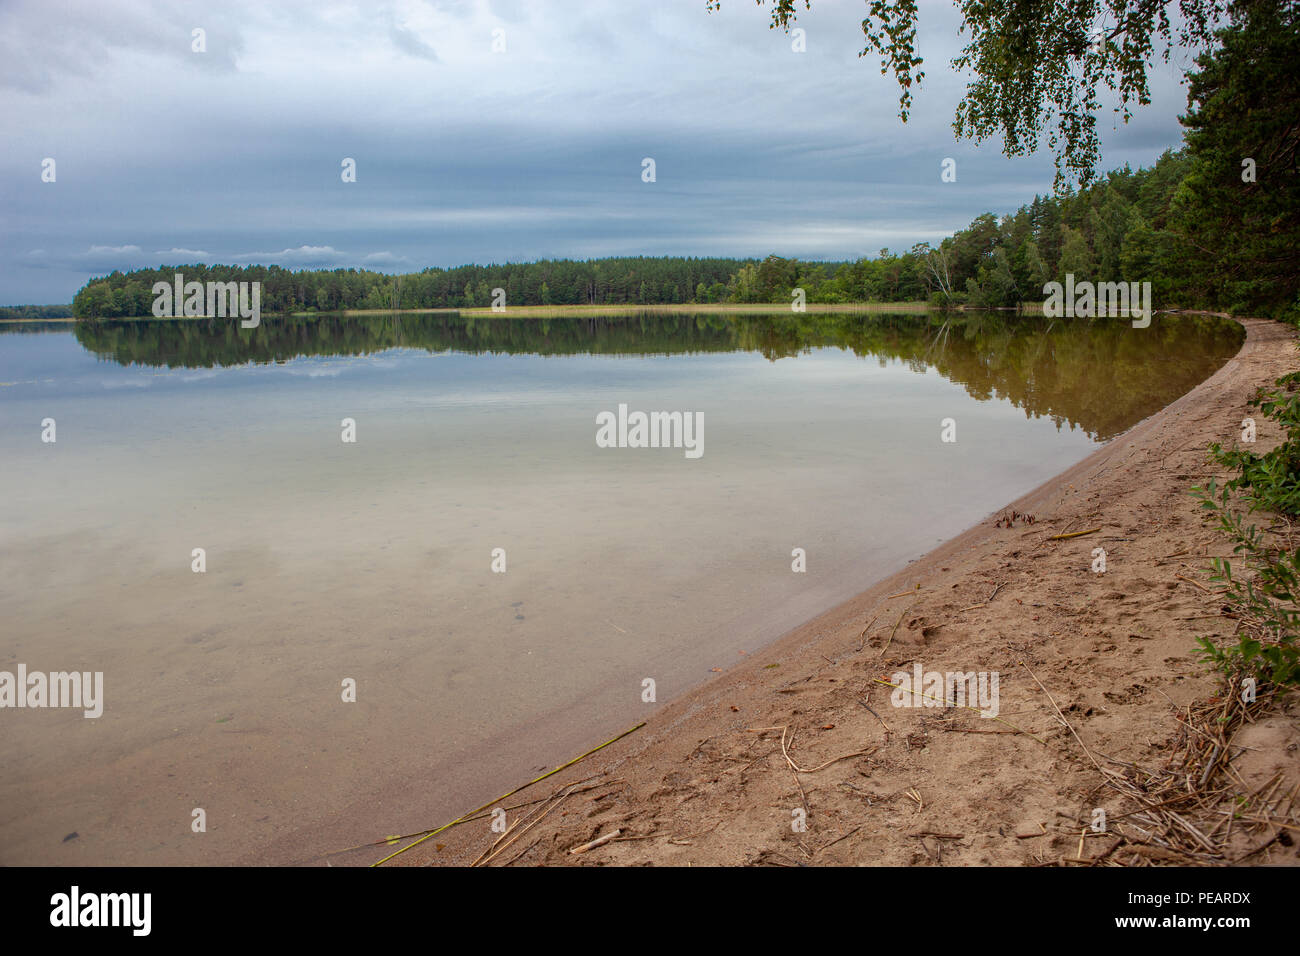 Playa de arena en un lago en un bosque con árboles y cielo nublado, de aguas calmas y tranquilas antecedentes Foto de stock